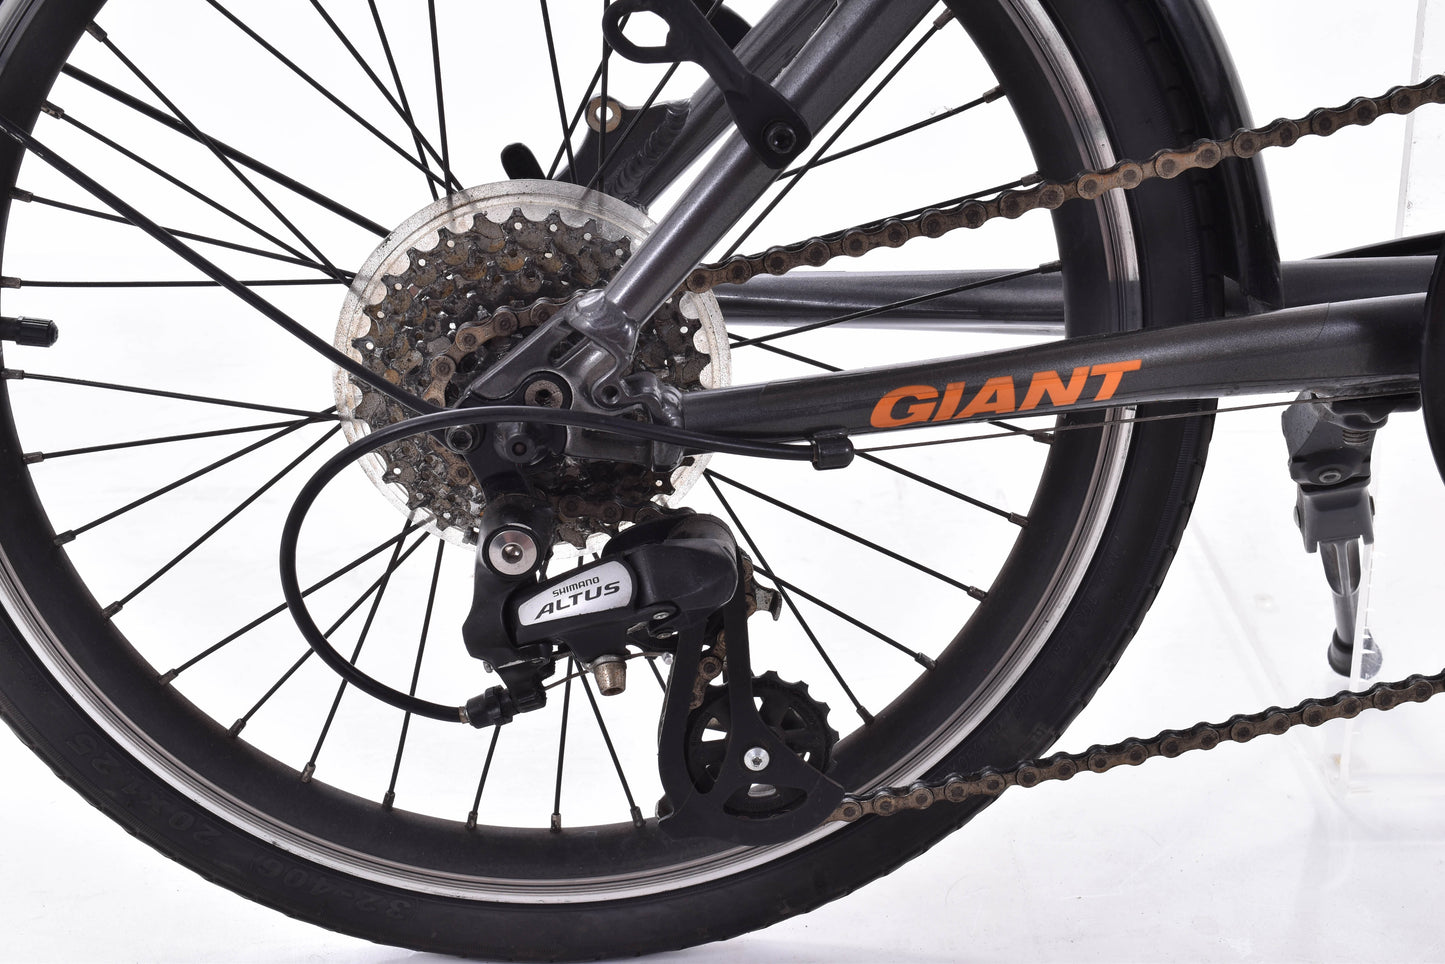 USED 2016 Giant ExpressWay Folding Bike Charcoal / Orange 8 speed